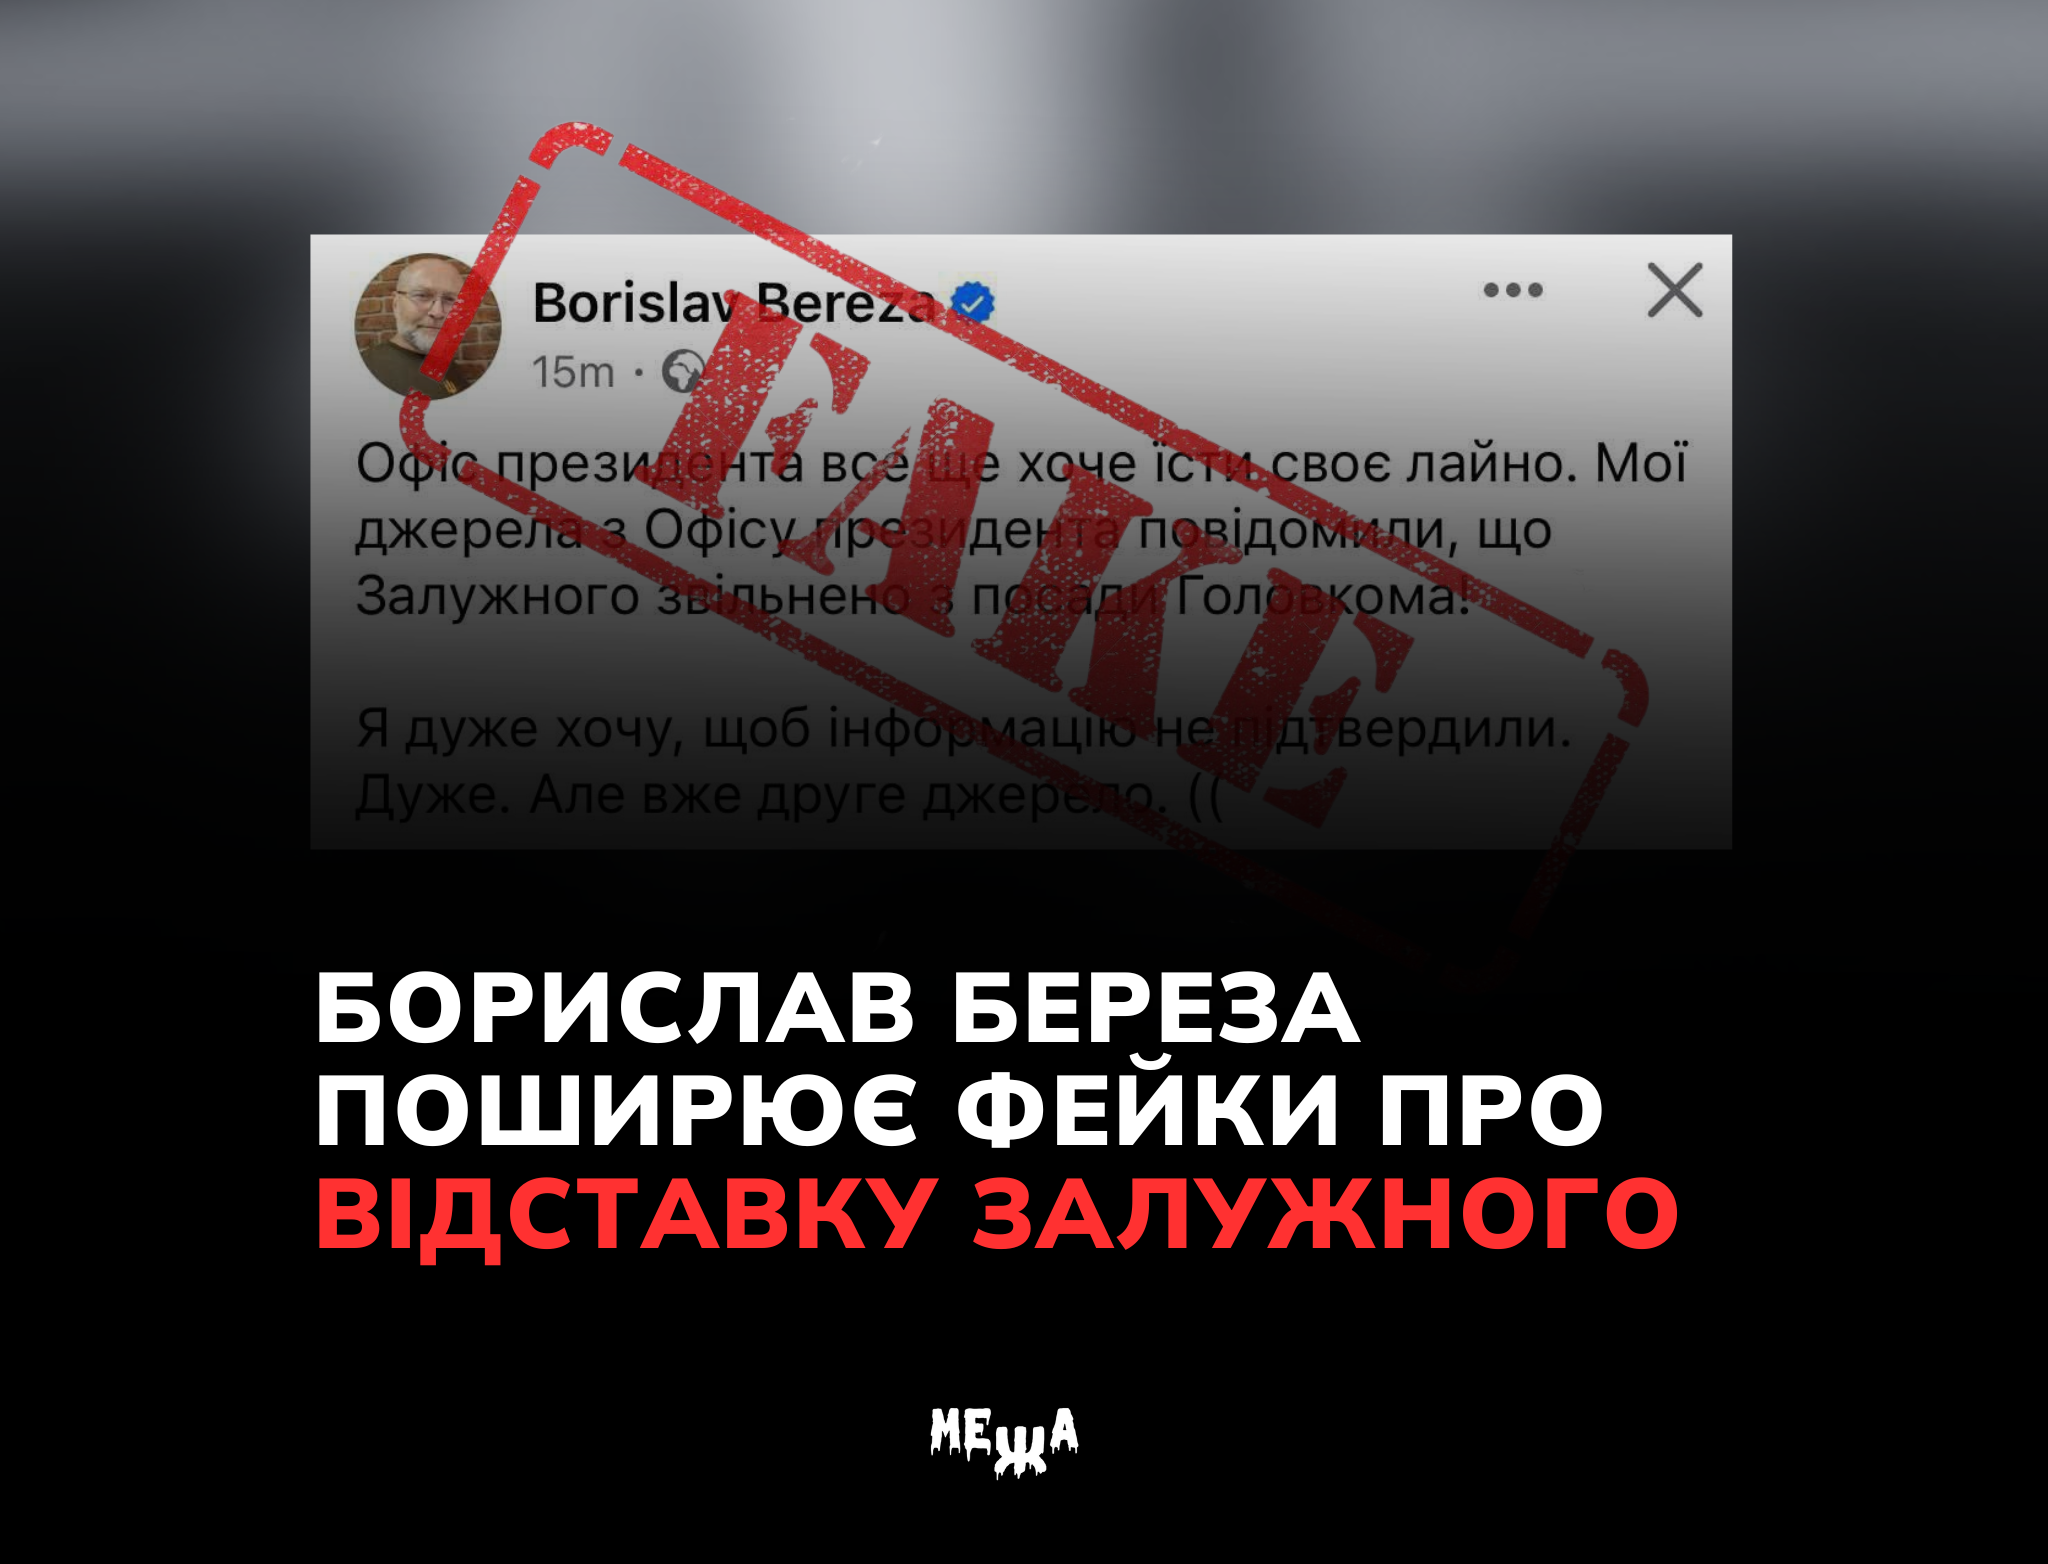 Борислав Береза: розгін фейків про Залужного